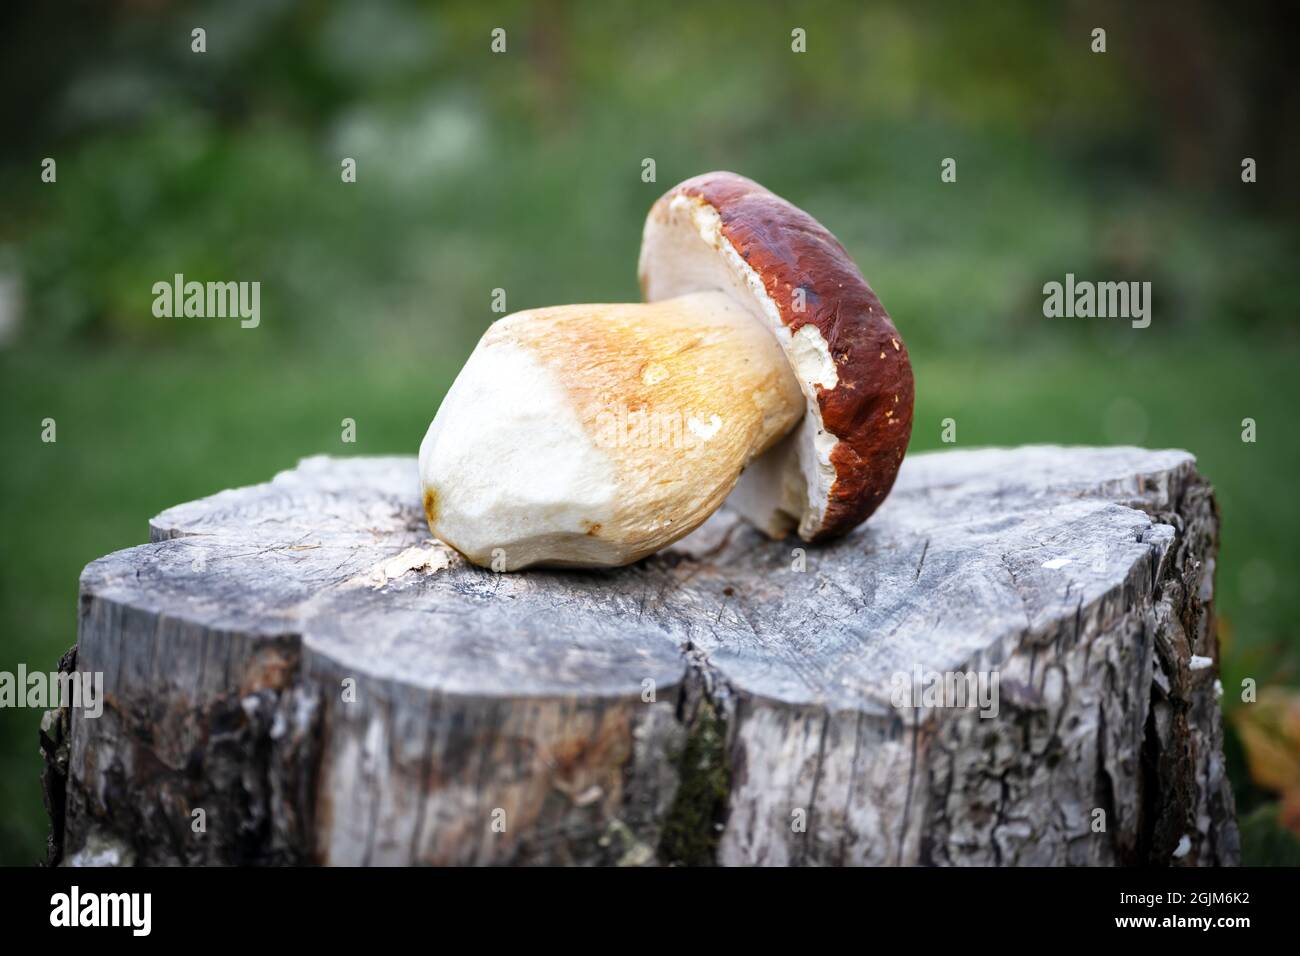 Grandi porcini di funghi bianchi su piatto di legno nel giardino d'autunno. Fotografia alimentare Foto Stock